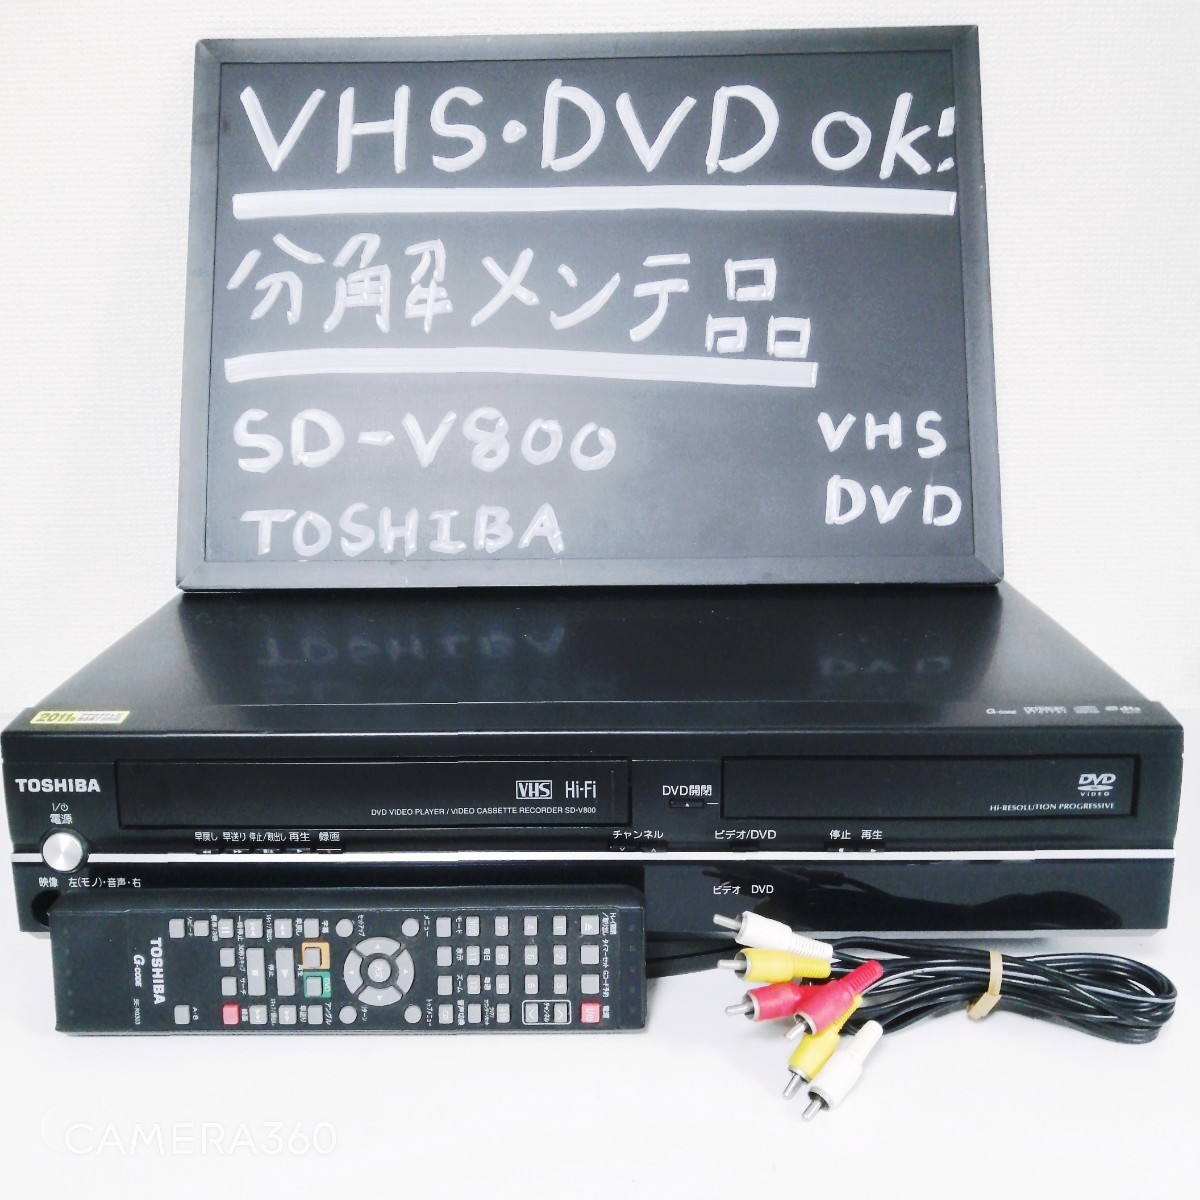 保障できる】 コンパクト Victor XV-Q10 DVD/CDオーディオプレーヤー